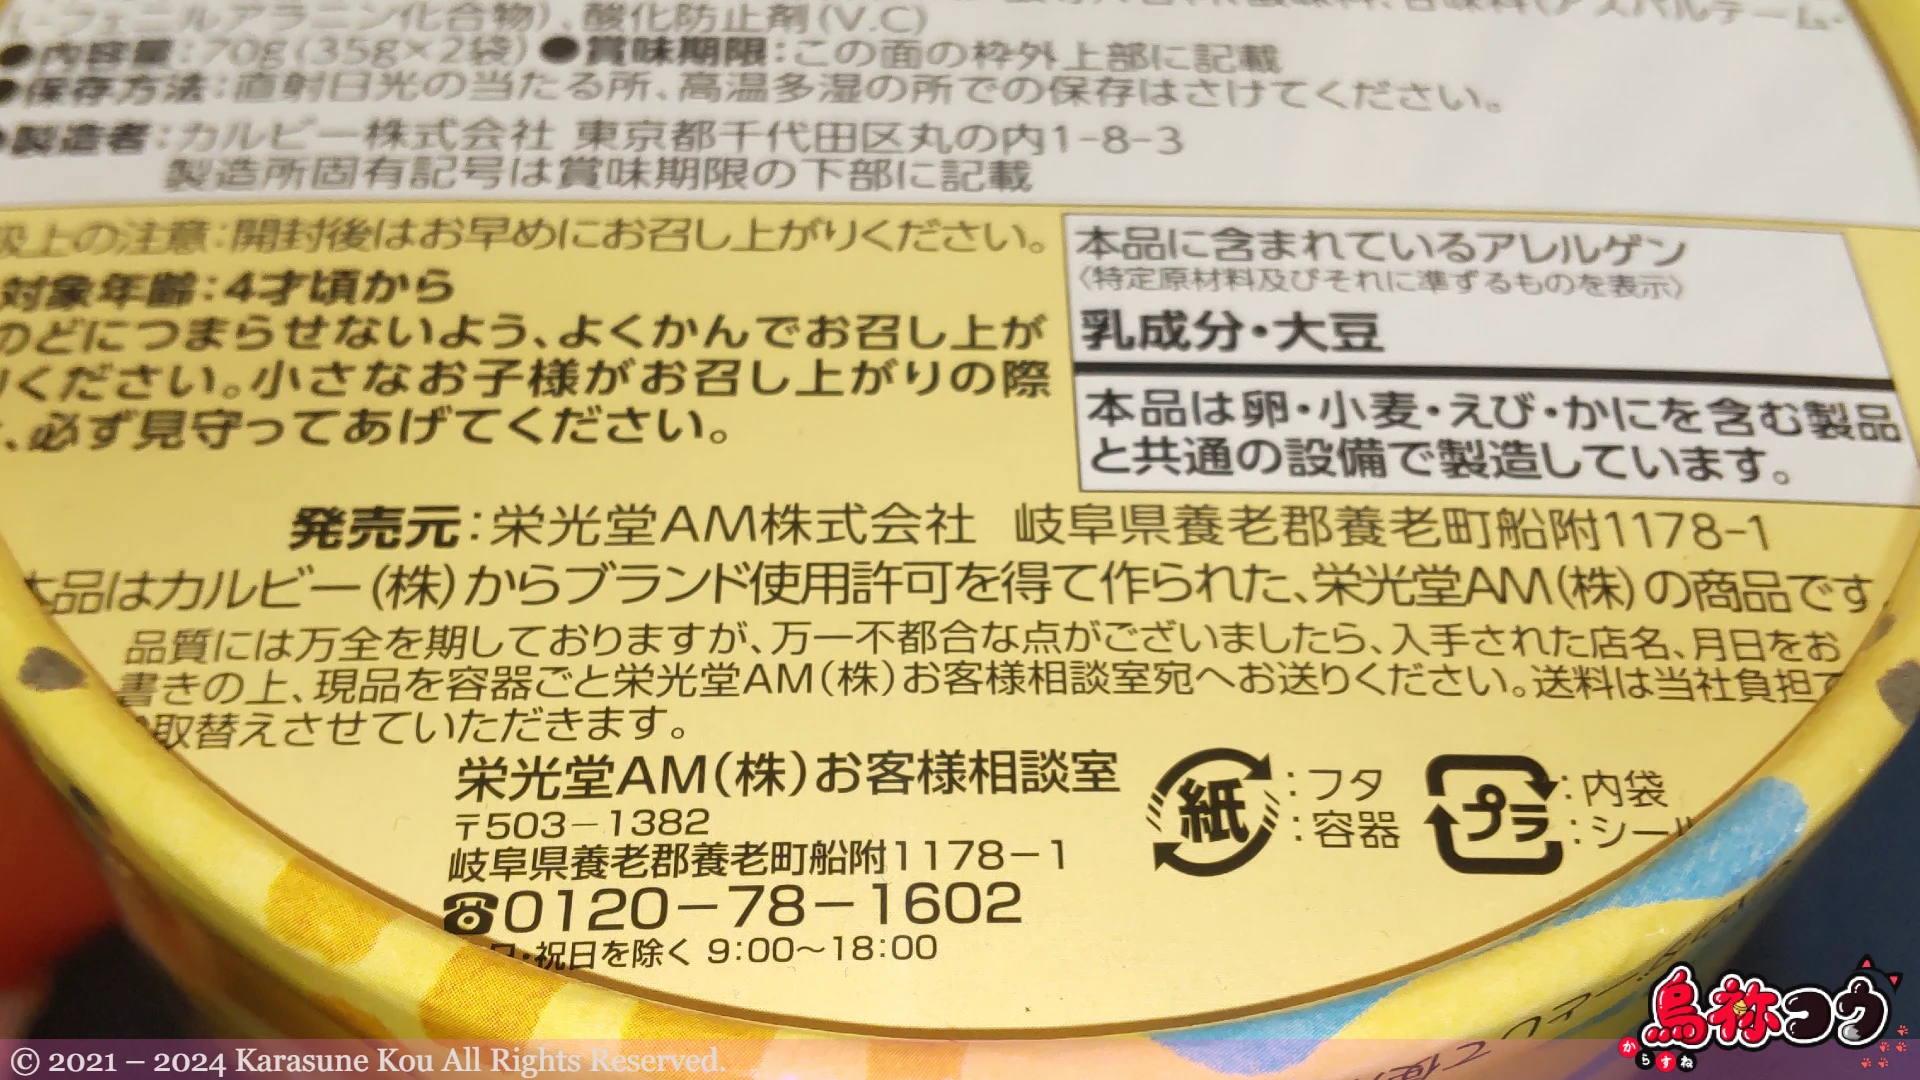 AM 太めホクホク Jagabee チーズ & ペッパー味バーレル BOX のメーカー表記です